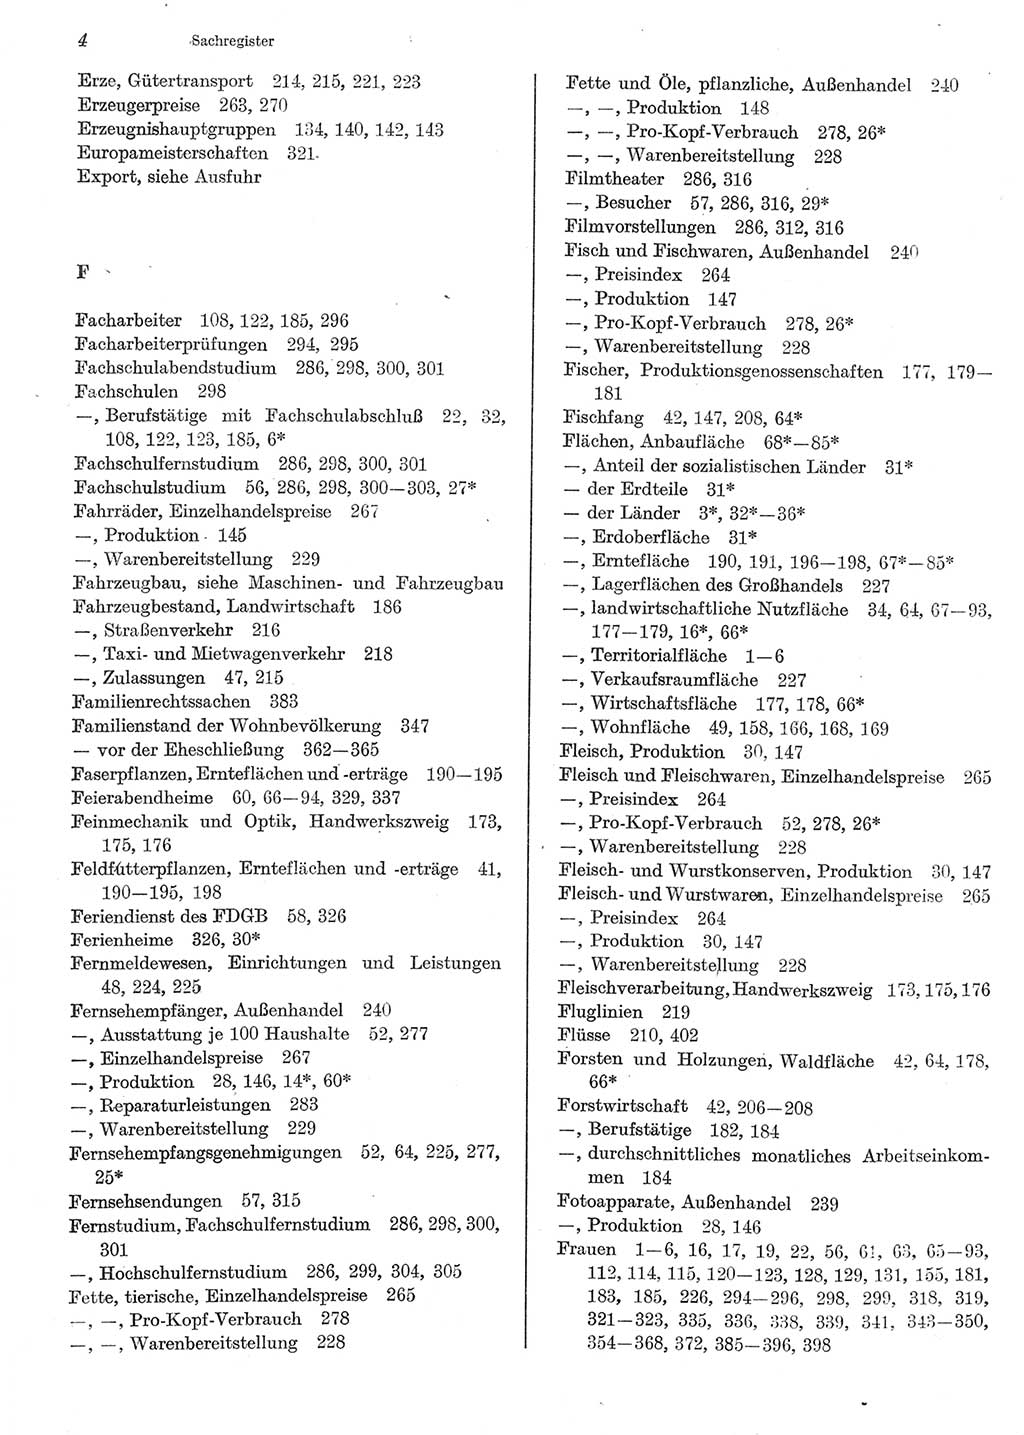 Statistisches Jahrbuch der Deutschen Demokratischen Republik (DDR) 1983, Seite 4 (Stat. Jb. DDR 1983, S. 4)